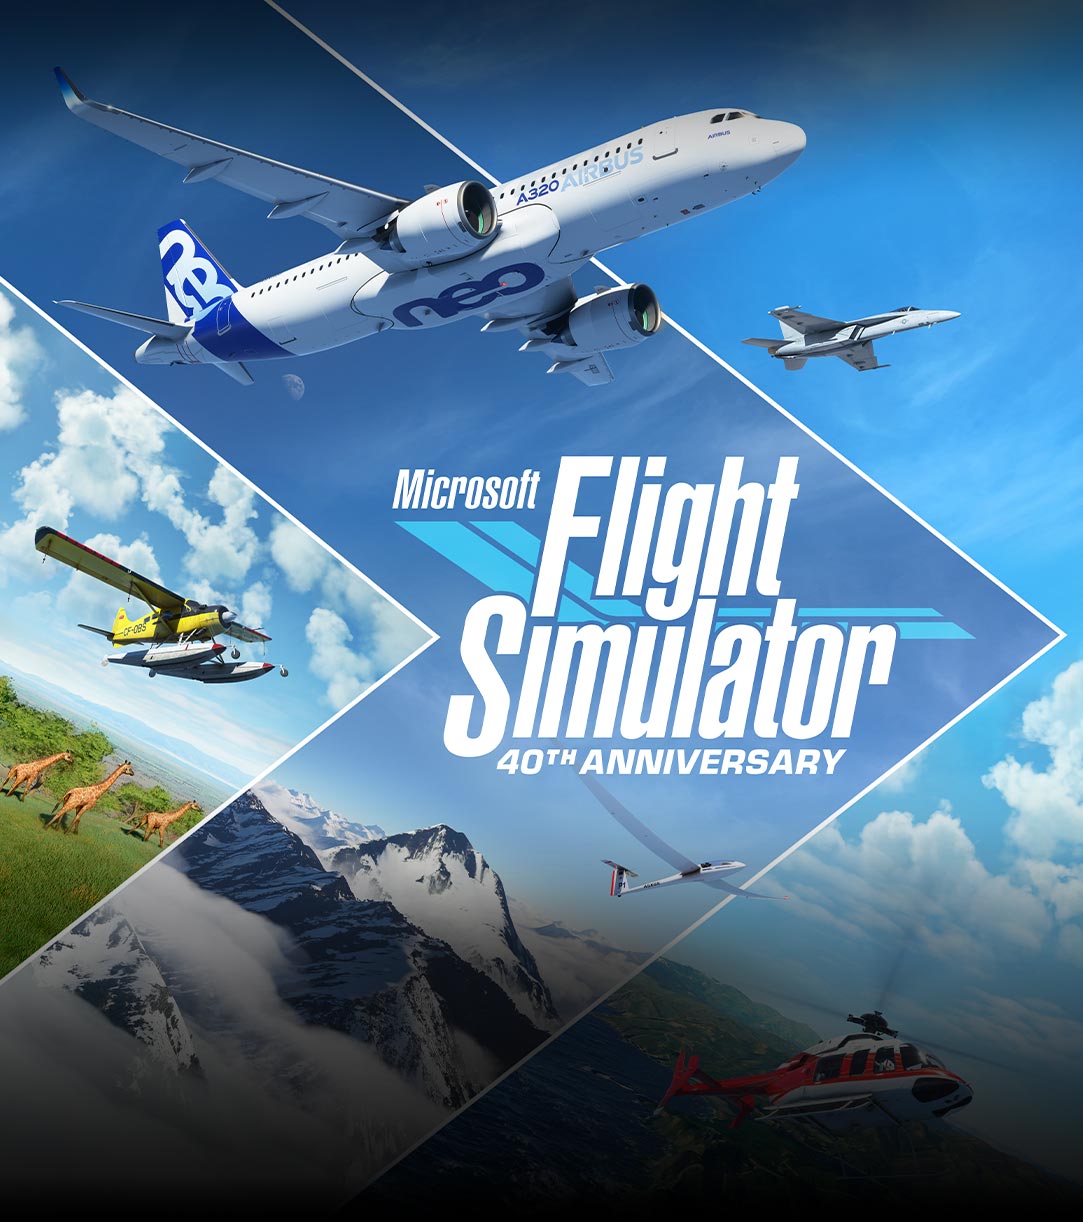 Logotipo do Microsoft Flight Simulator 40th Anniversary, aviões e cenas de diferentes partes do mundo